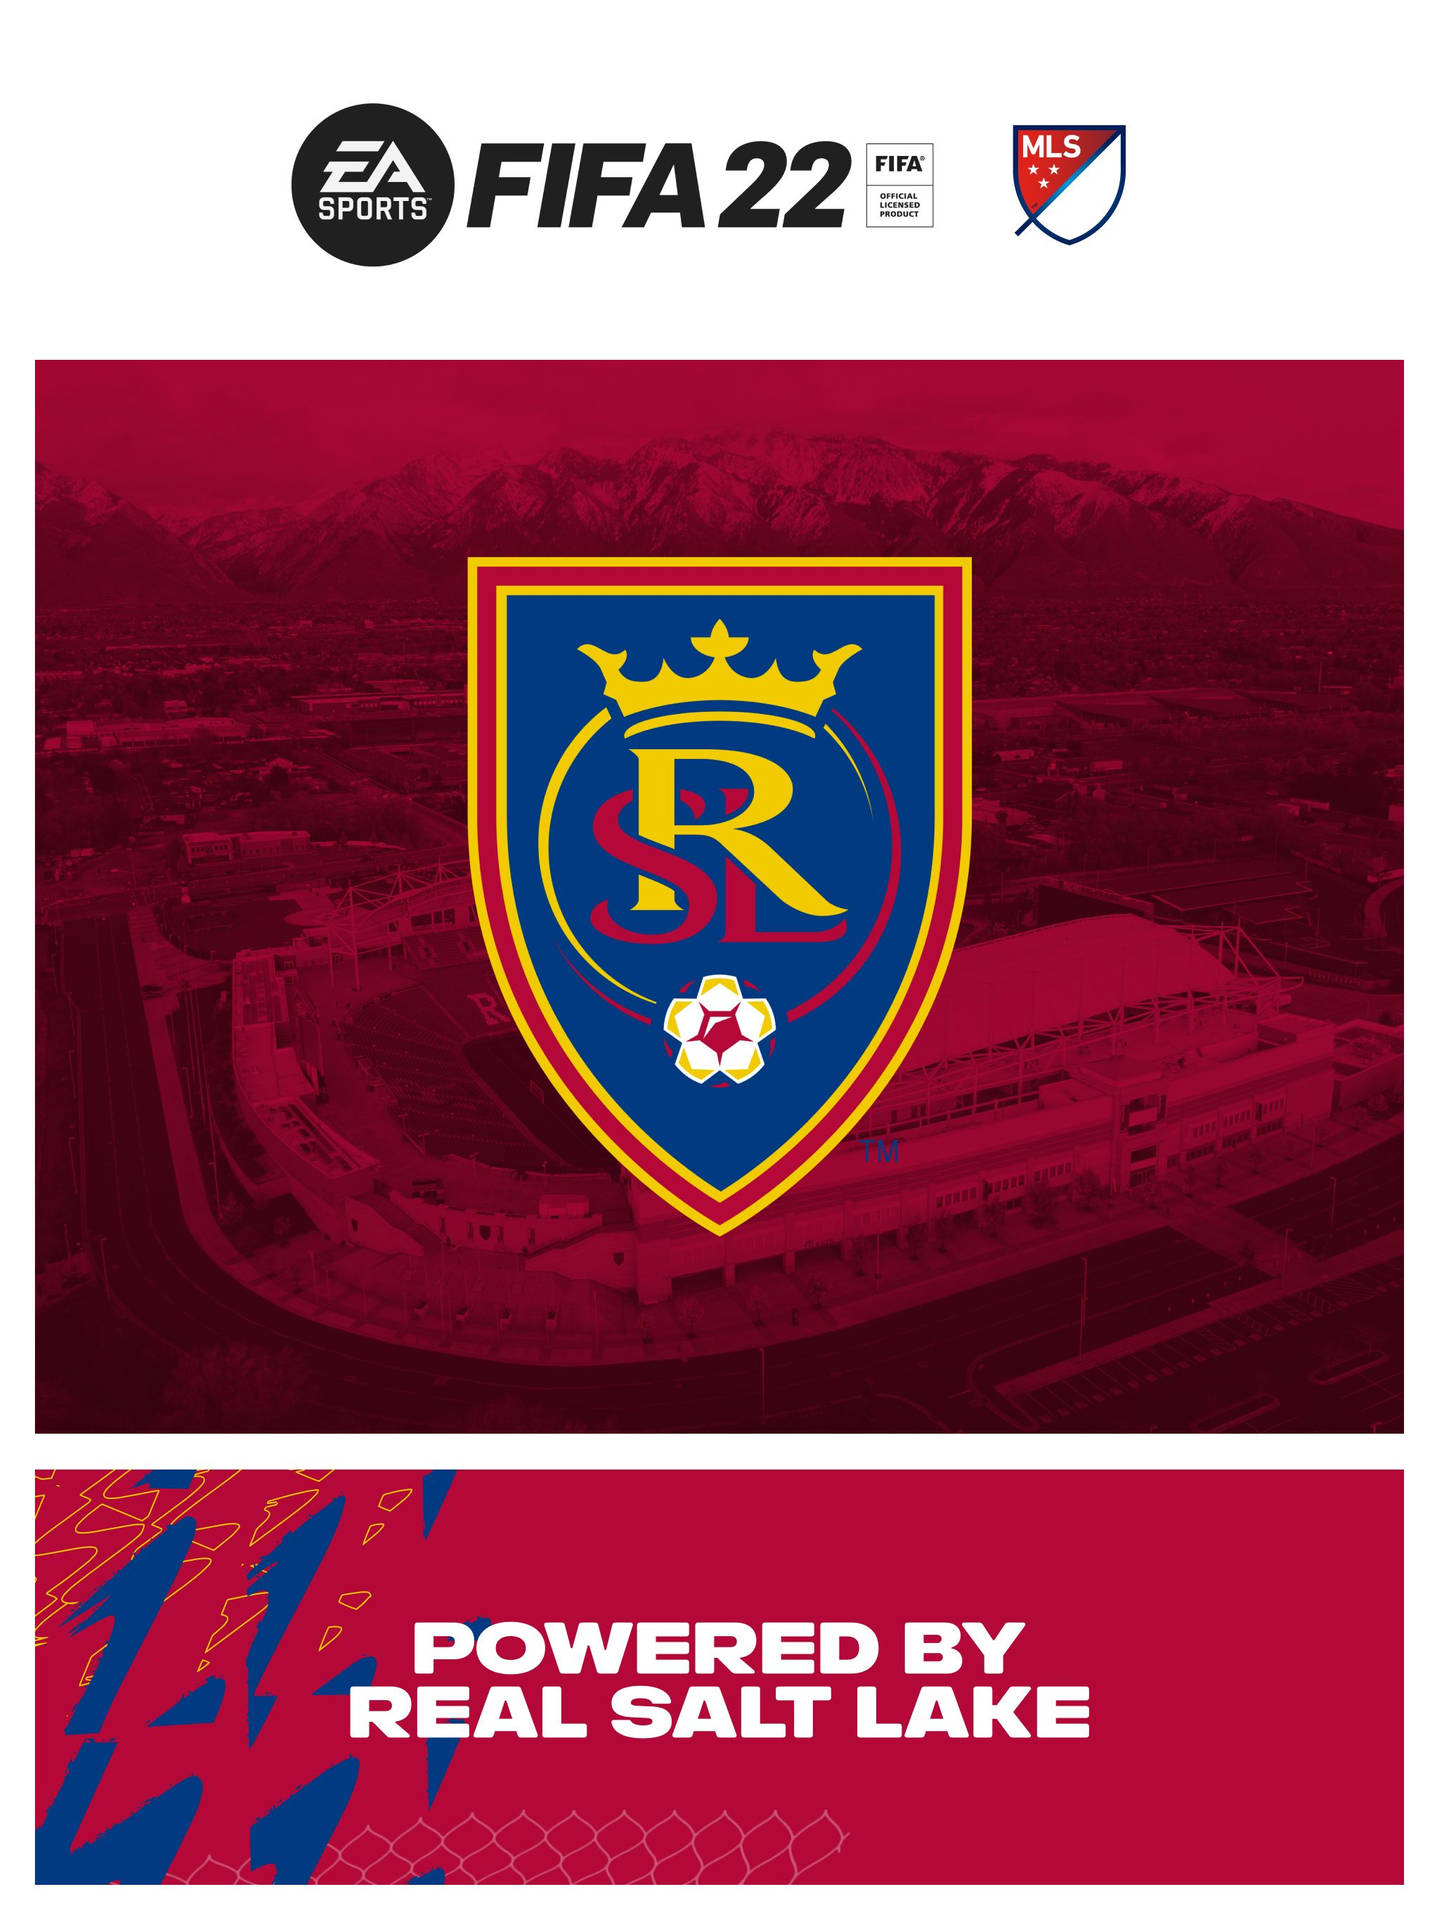 Real Salt Lake Soccer Game At Rio Tinto Stadium Wallpaper